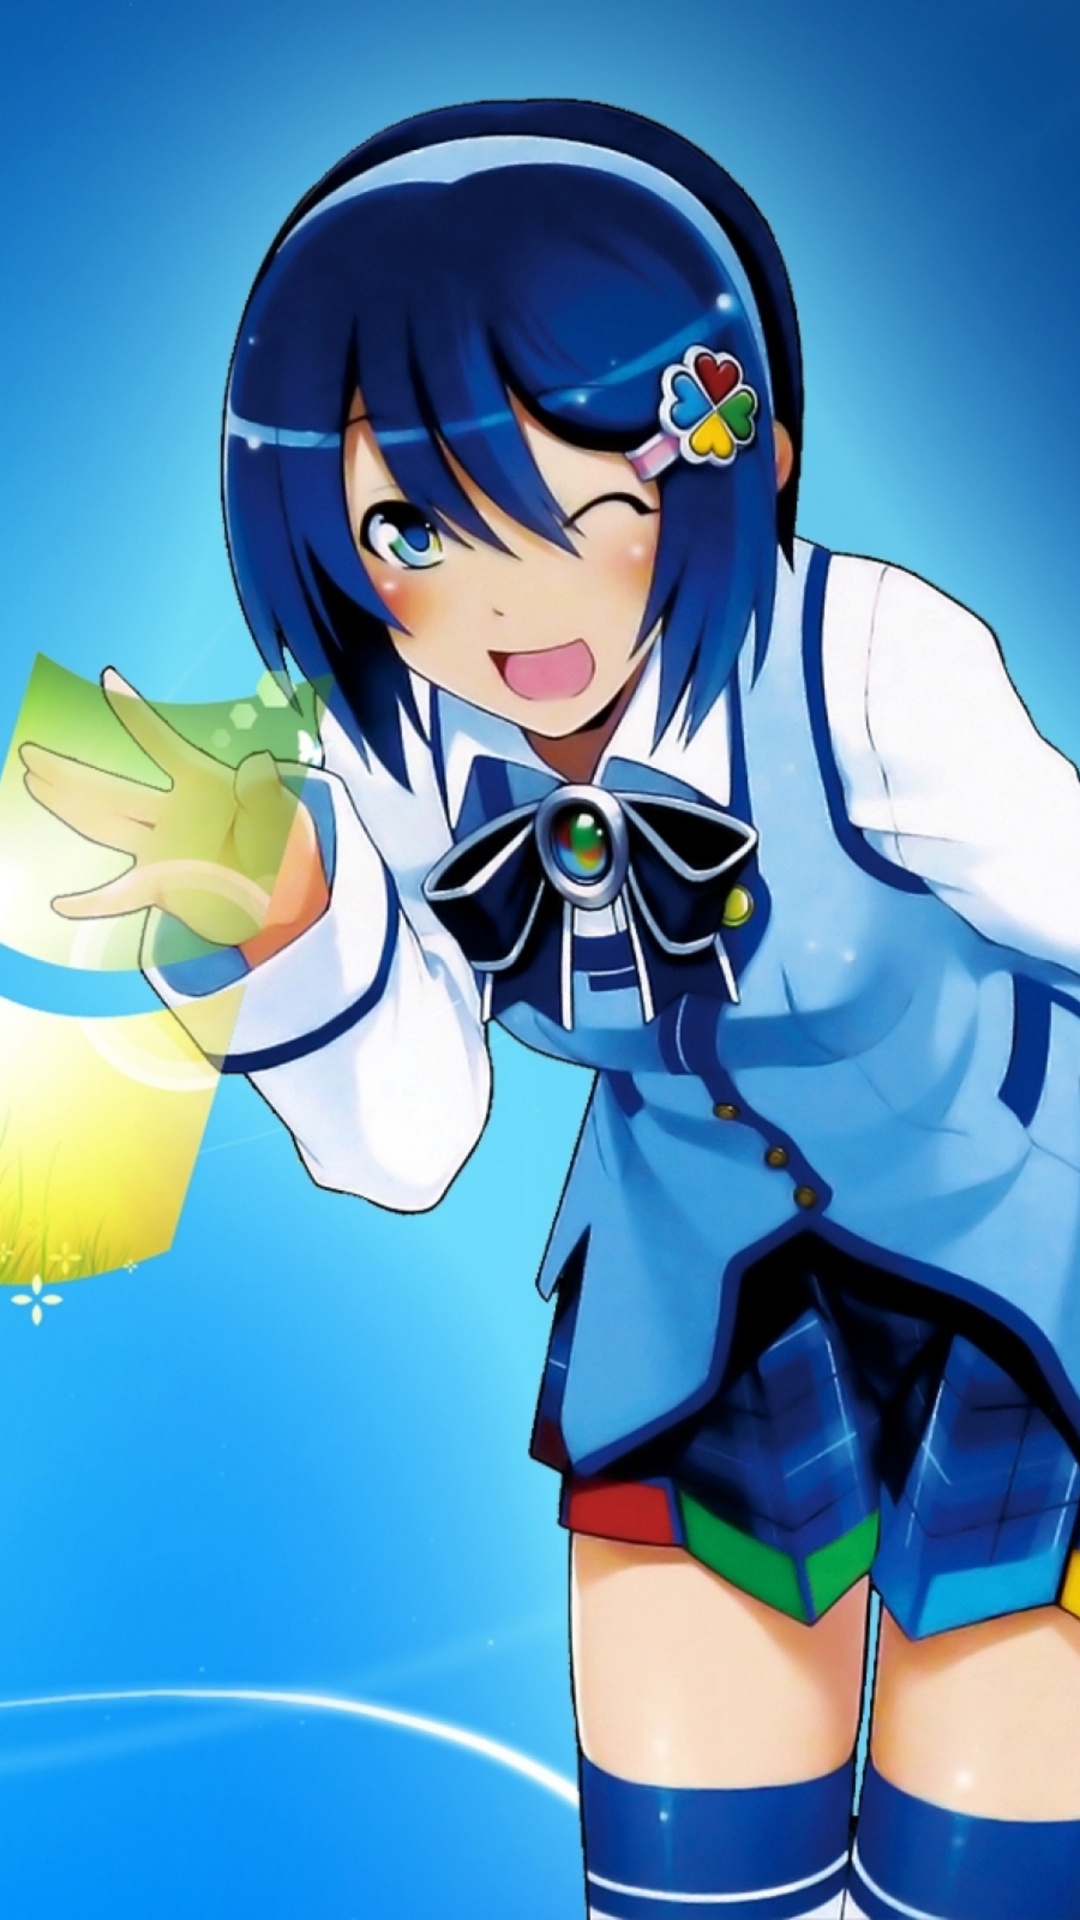 Mujer en Uniforme Escolar Azul y Blanco Personaje de Anime. Wallpaper in 1080x1920 Resolution